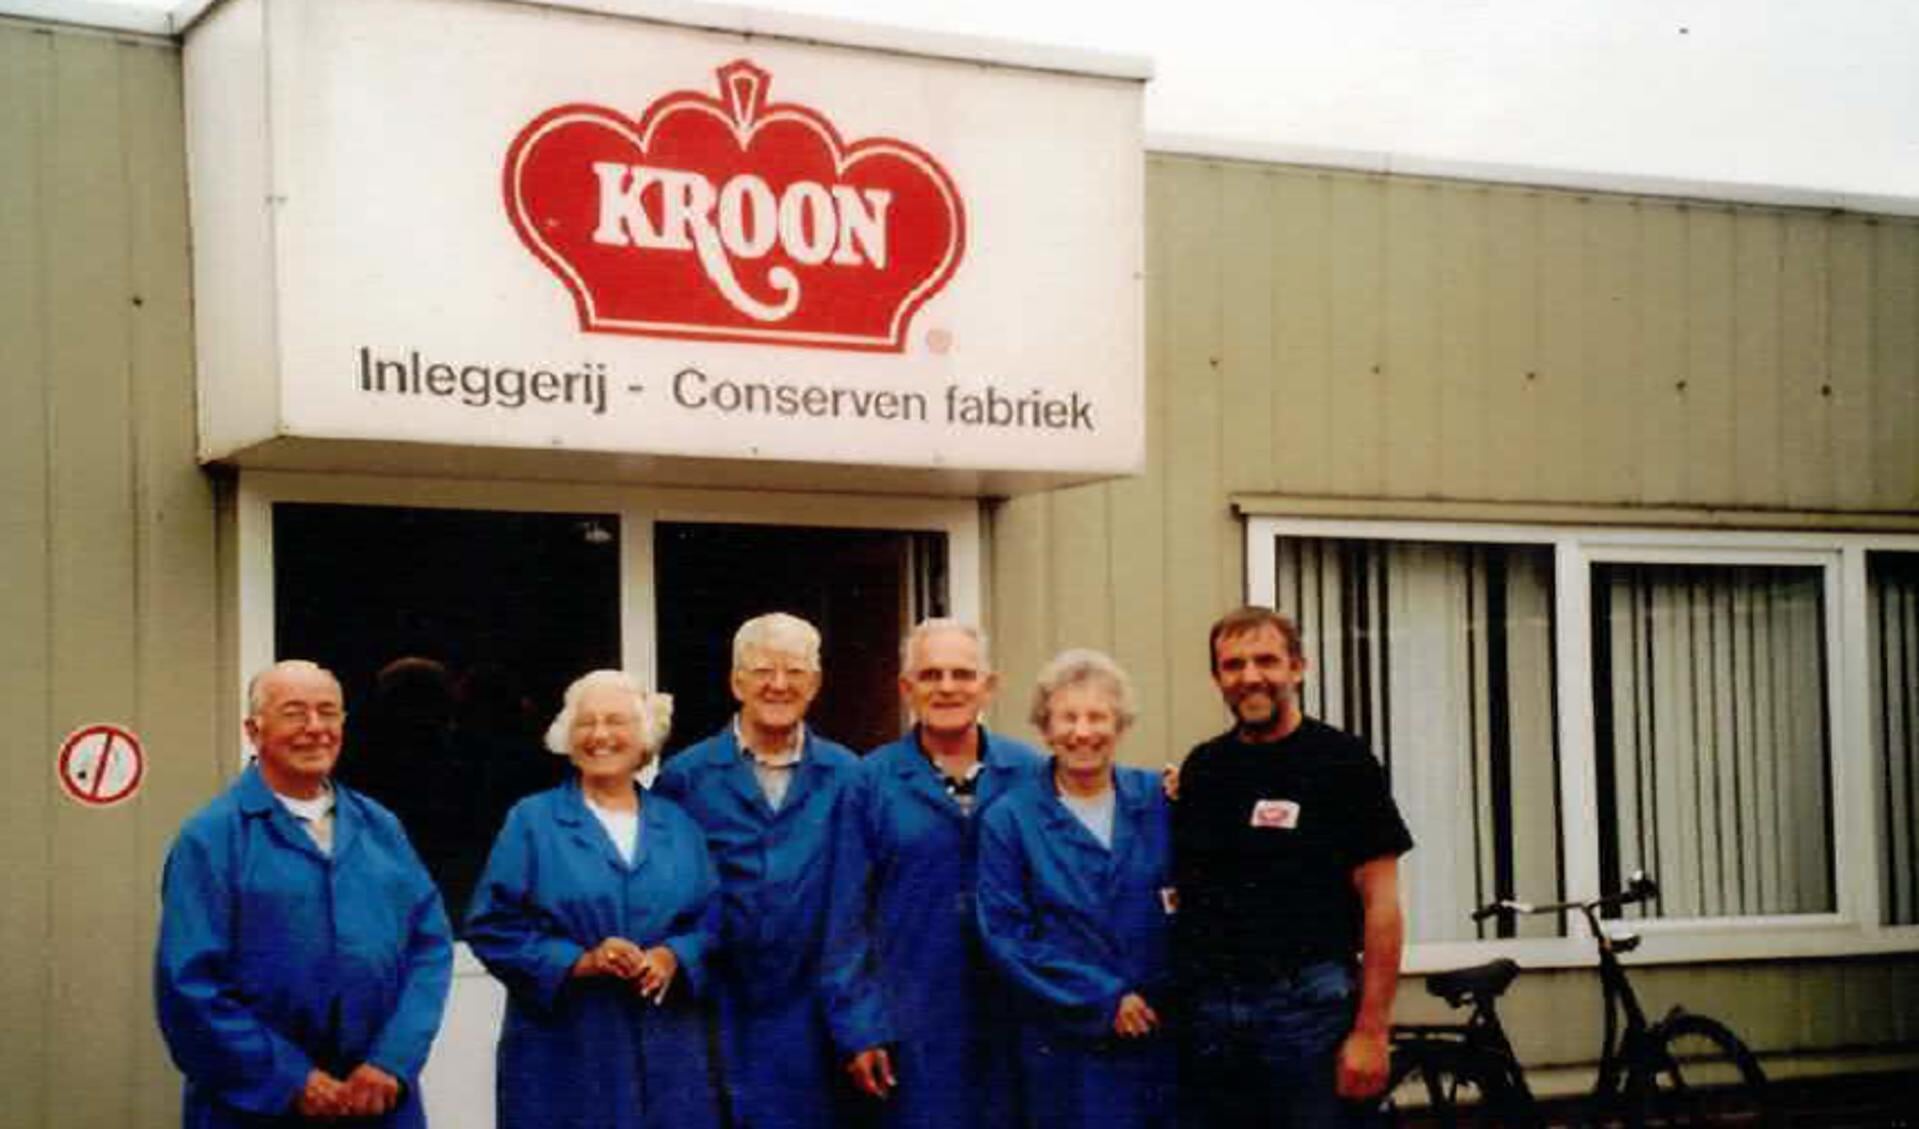 Uiterst links: Dirk van der Kroon (directeur tweede generatie), uiterst rechts: Theo van der Kroon (directeur derde generatie). De personen in het midden zijn familieleden die op bezoek zijn.